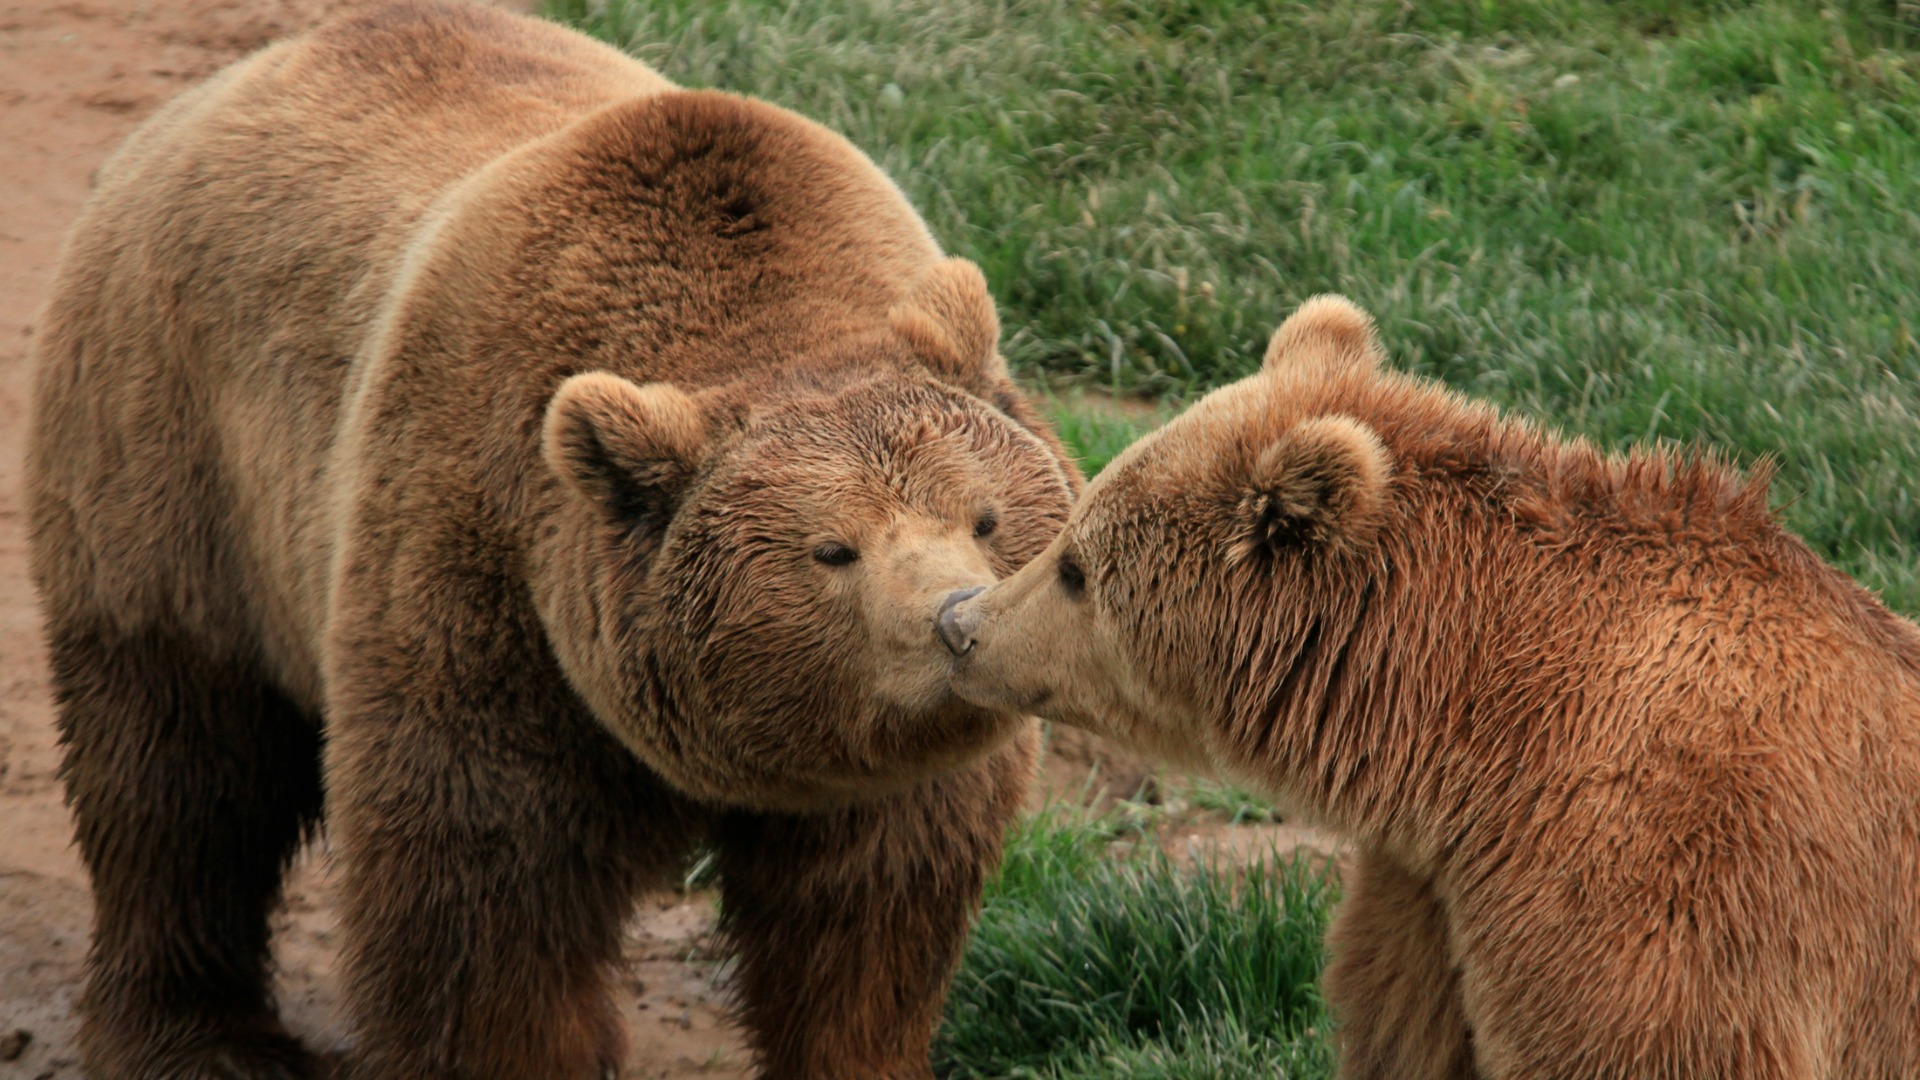 Los osos se comunican a través del olor de sus pies, según recoge un estudio científico